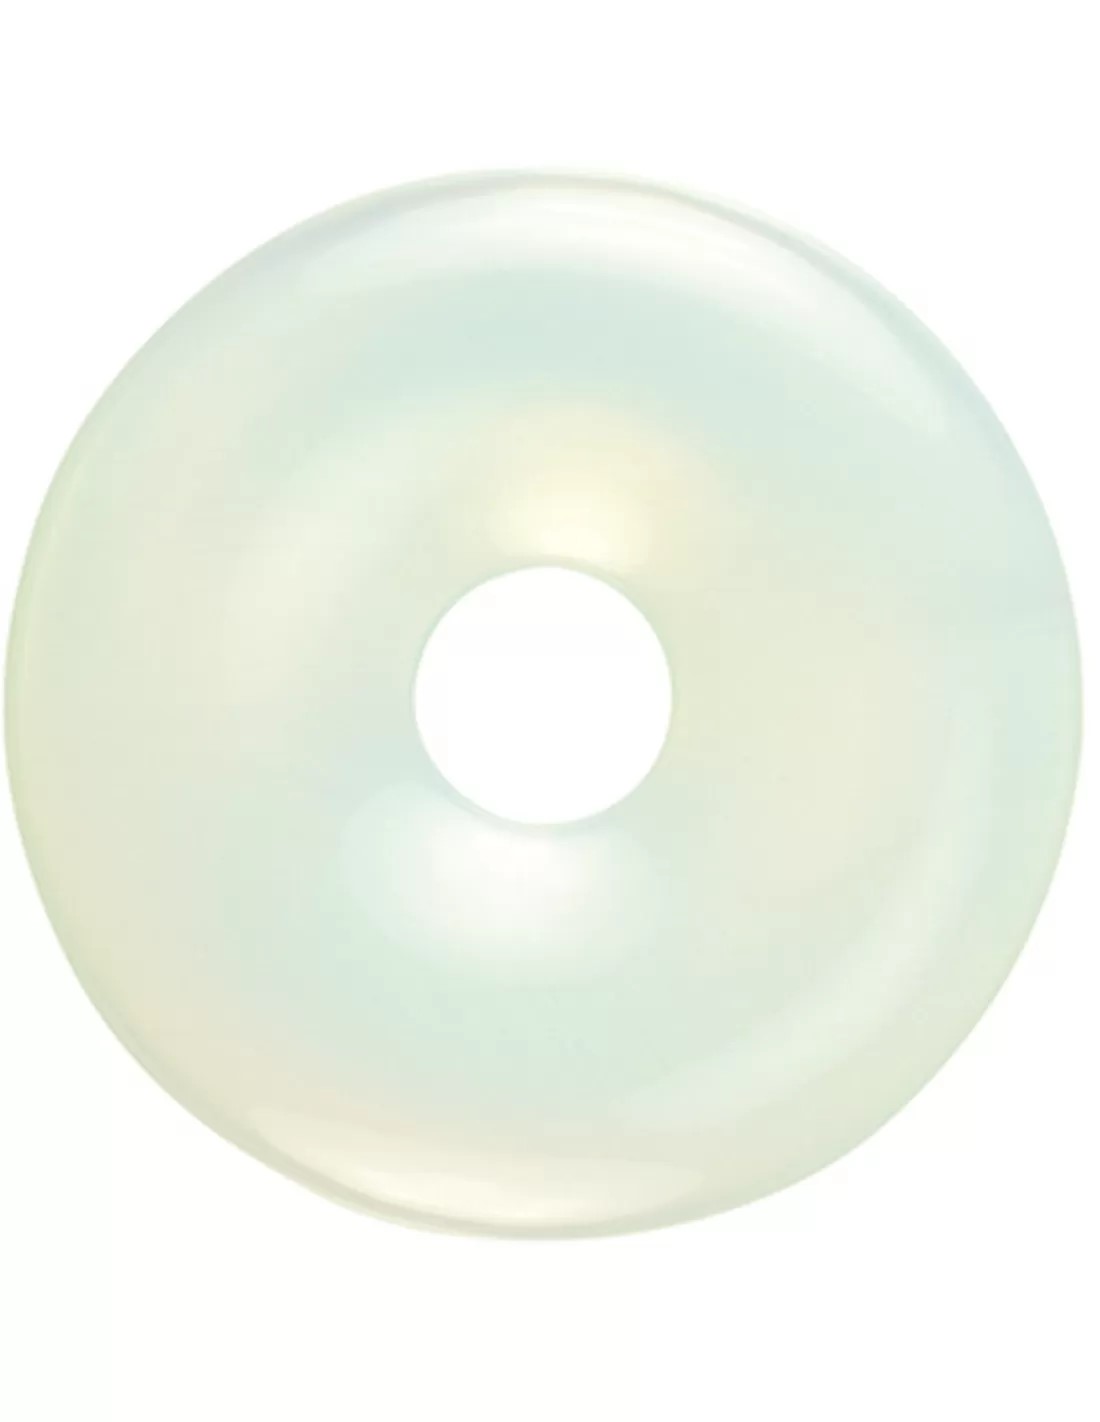 Edelsteen Donut Opaliet 50mm (synth)